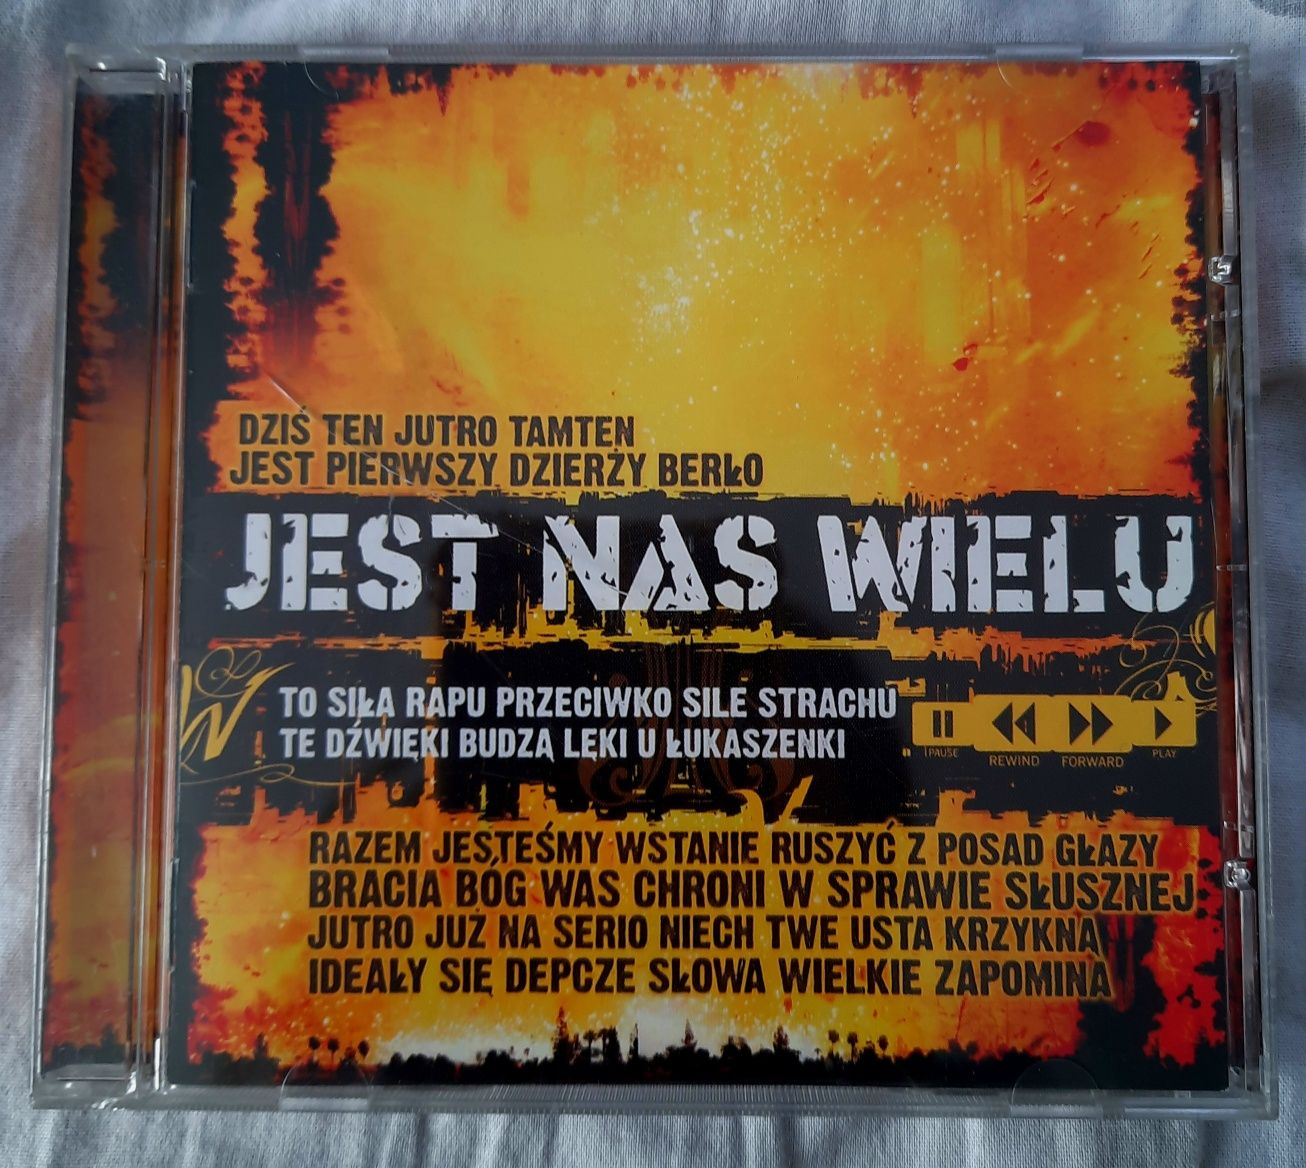 Płyta cd jest na swielu Various Artists 2004